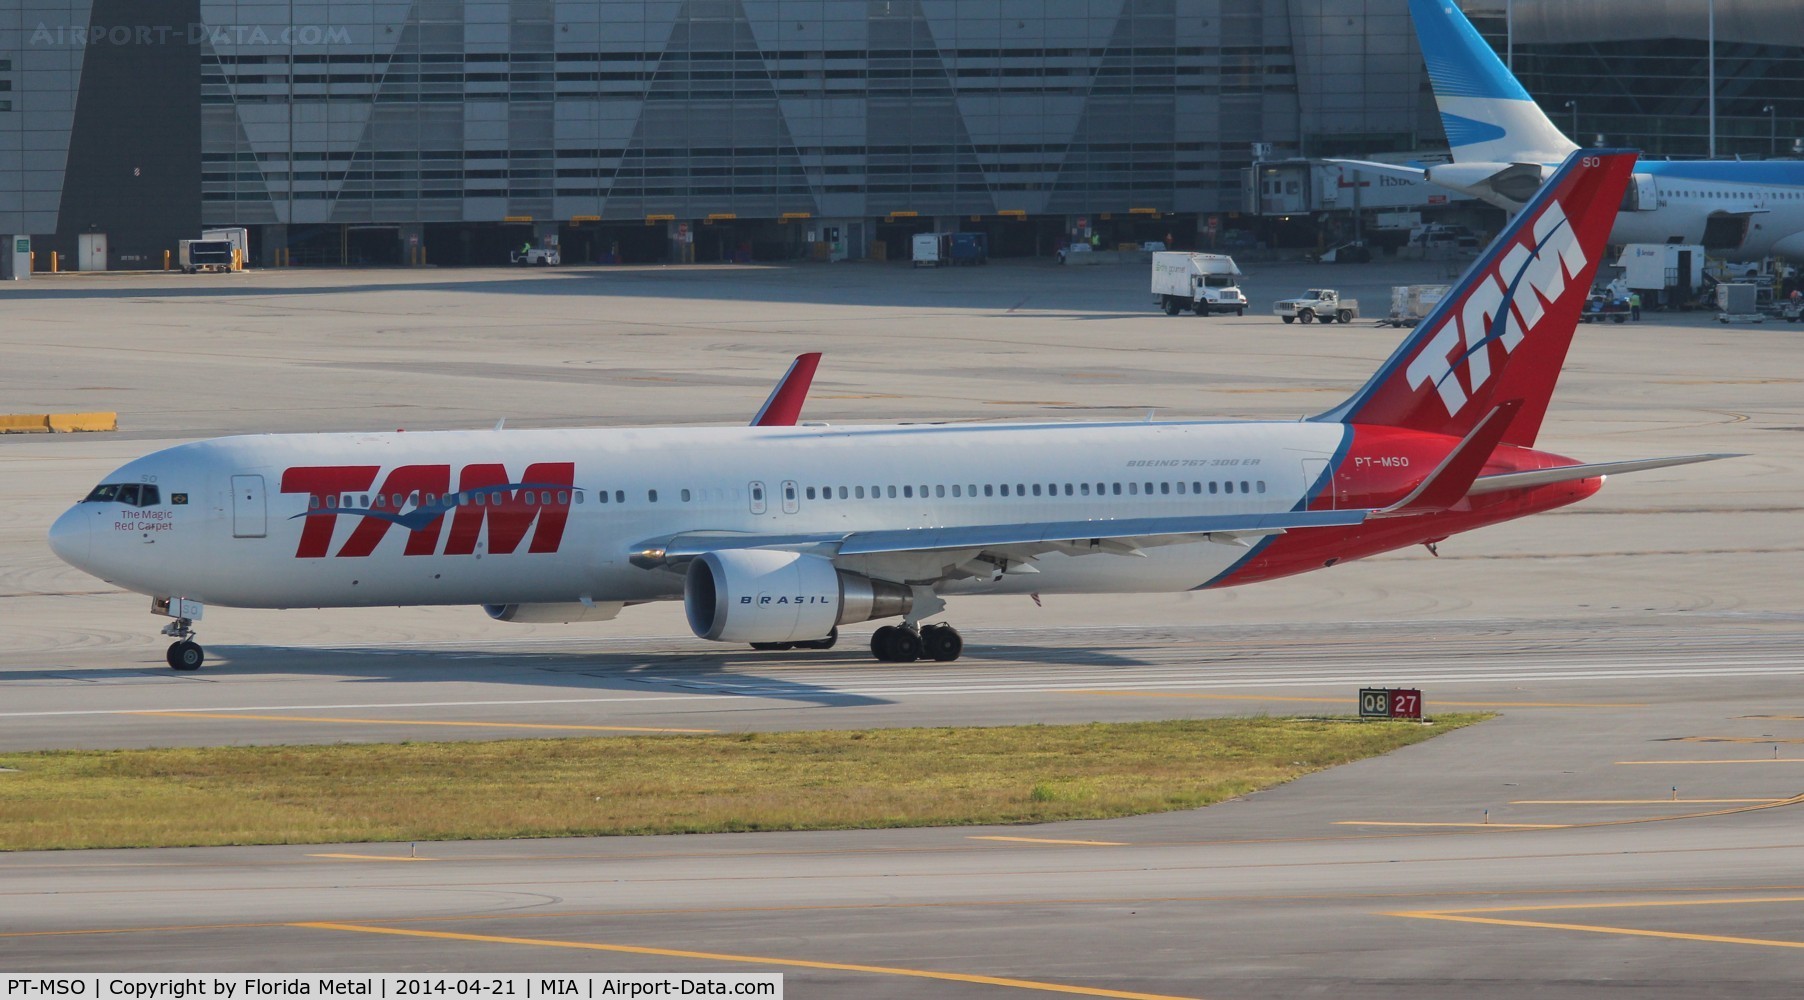 PT-MSO, 2012 Boeing 767-316/ER C/N 41747, Ex CC-BDG of LAN, now with TAM